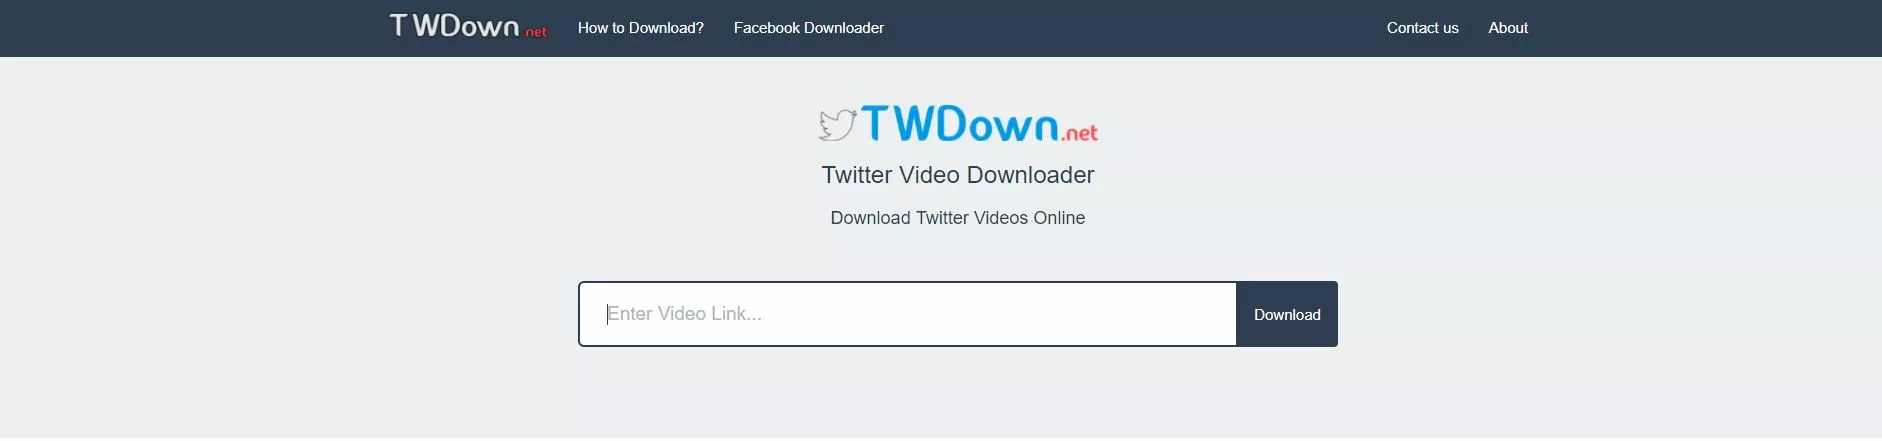 TWDown Download Twitter Videos